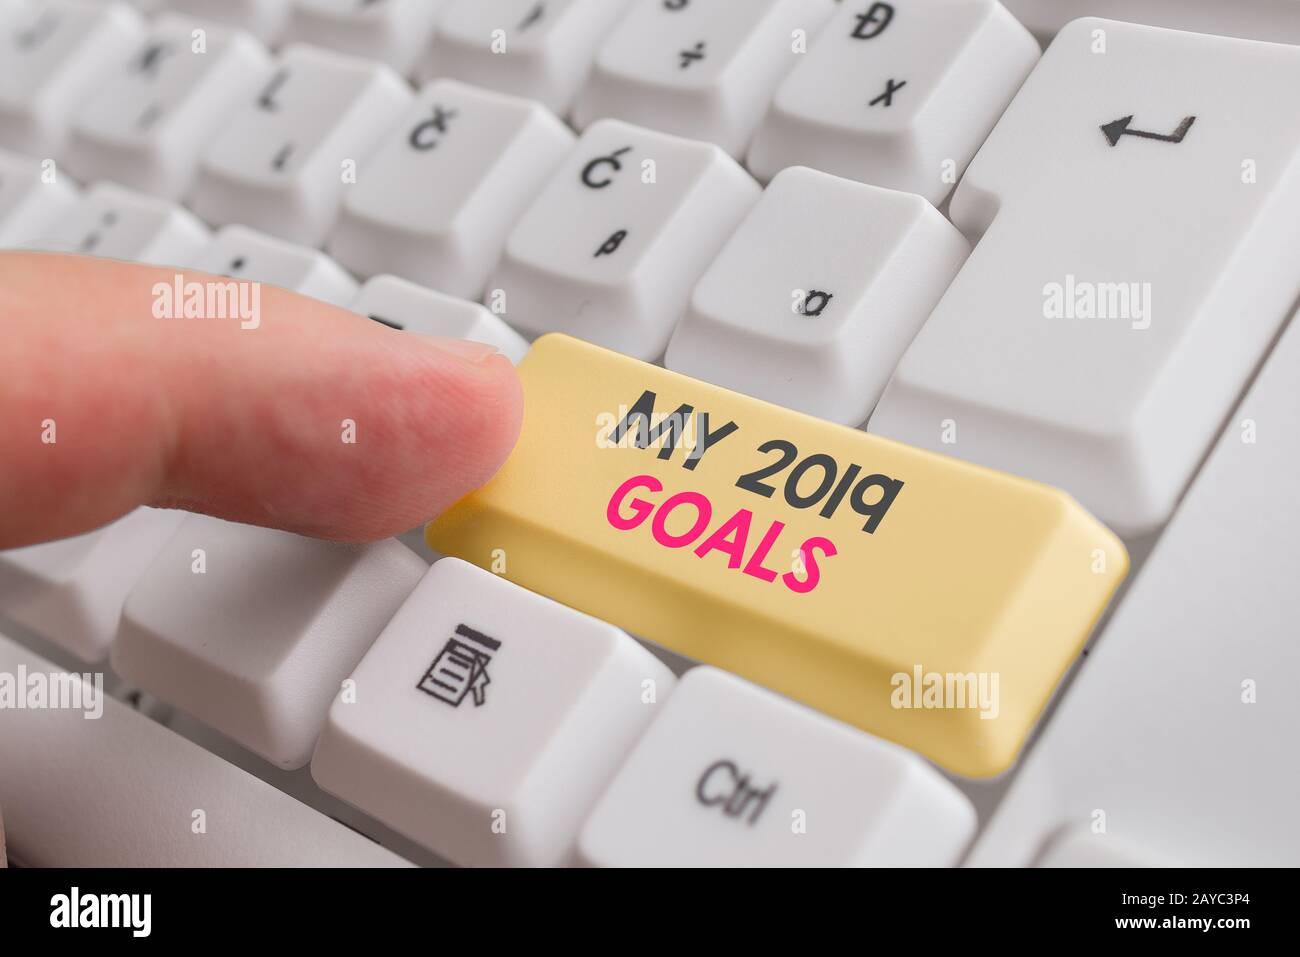 Schreiben Sie eine Notiz mit meinen 2019-Zielen. Geschäftsfoto, auf dem Sie demonstratingale Ziele oder Pläne für das laufende Jahr vorstellen können Stockfoto